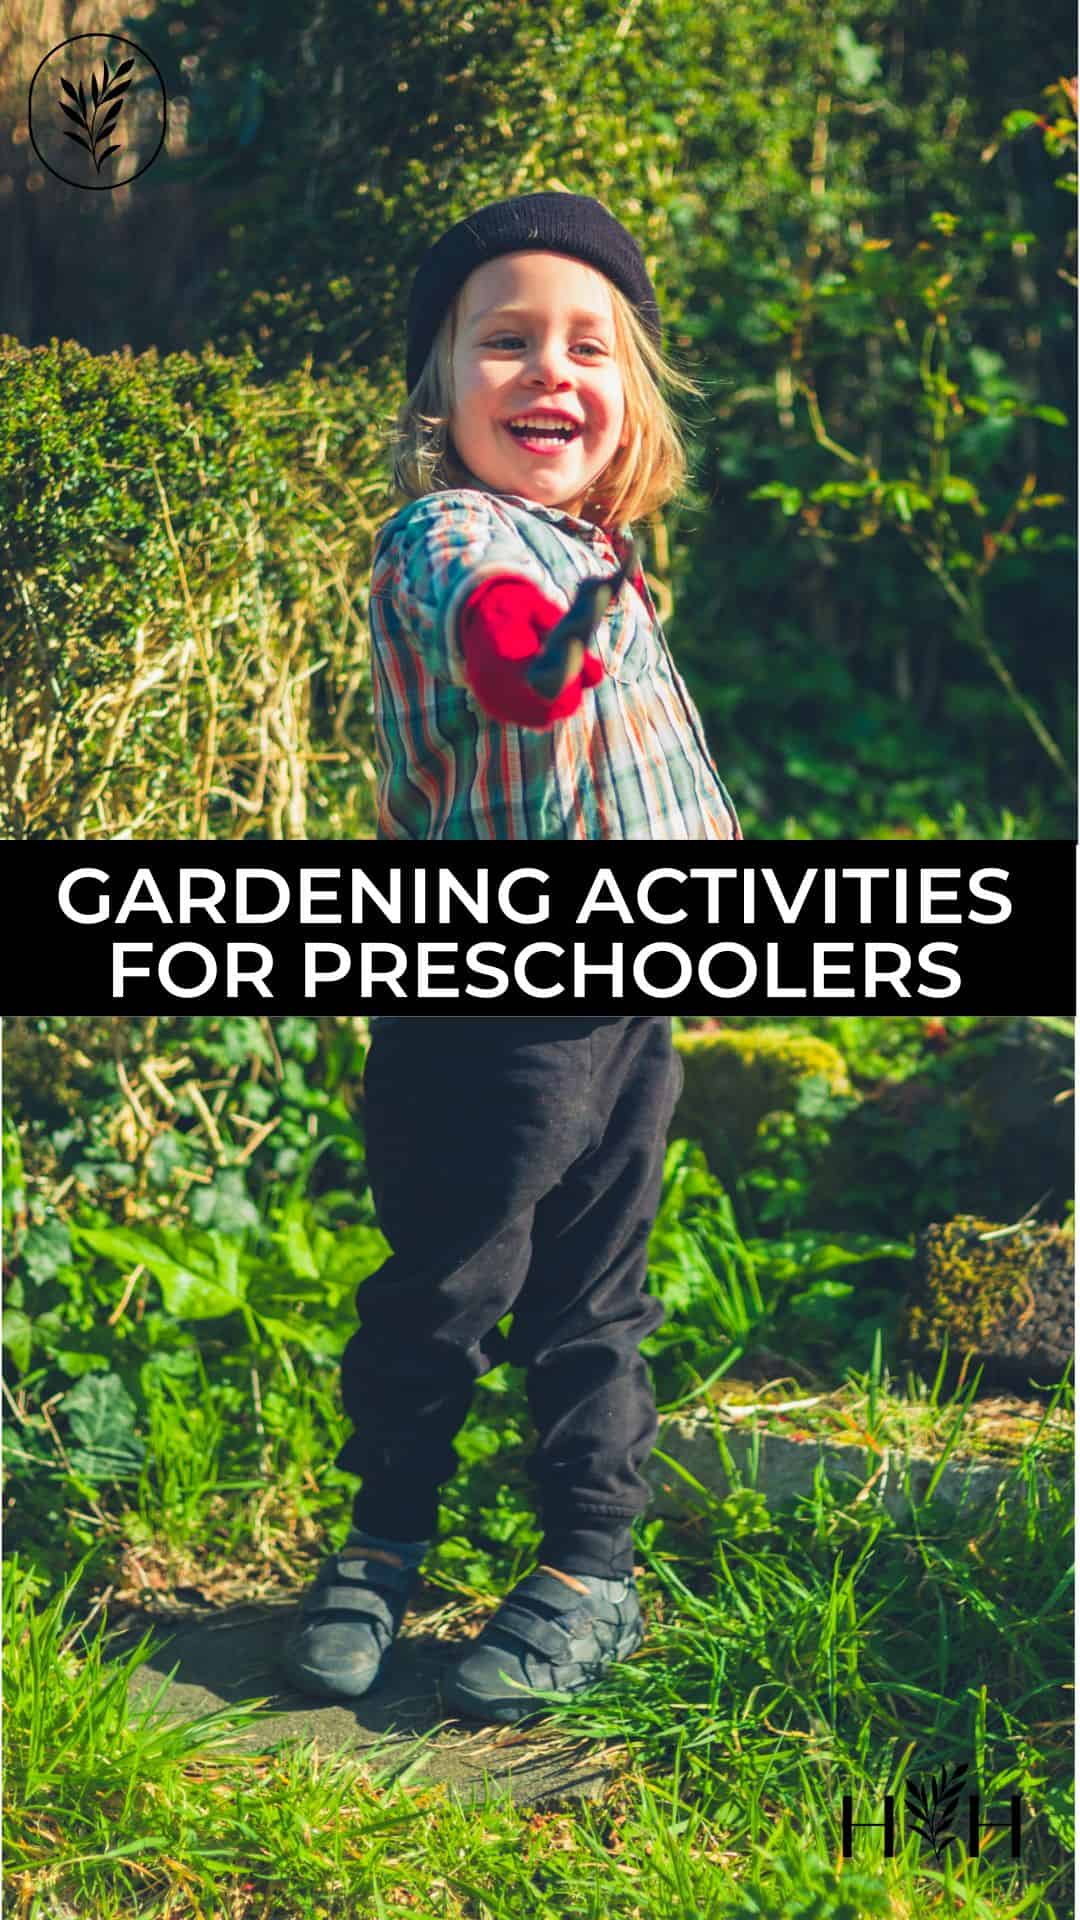 Gardening activities for preschoolers via @home4theharvest